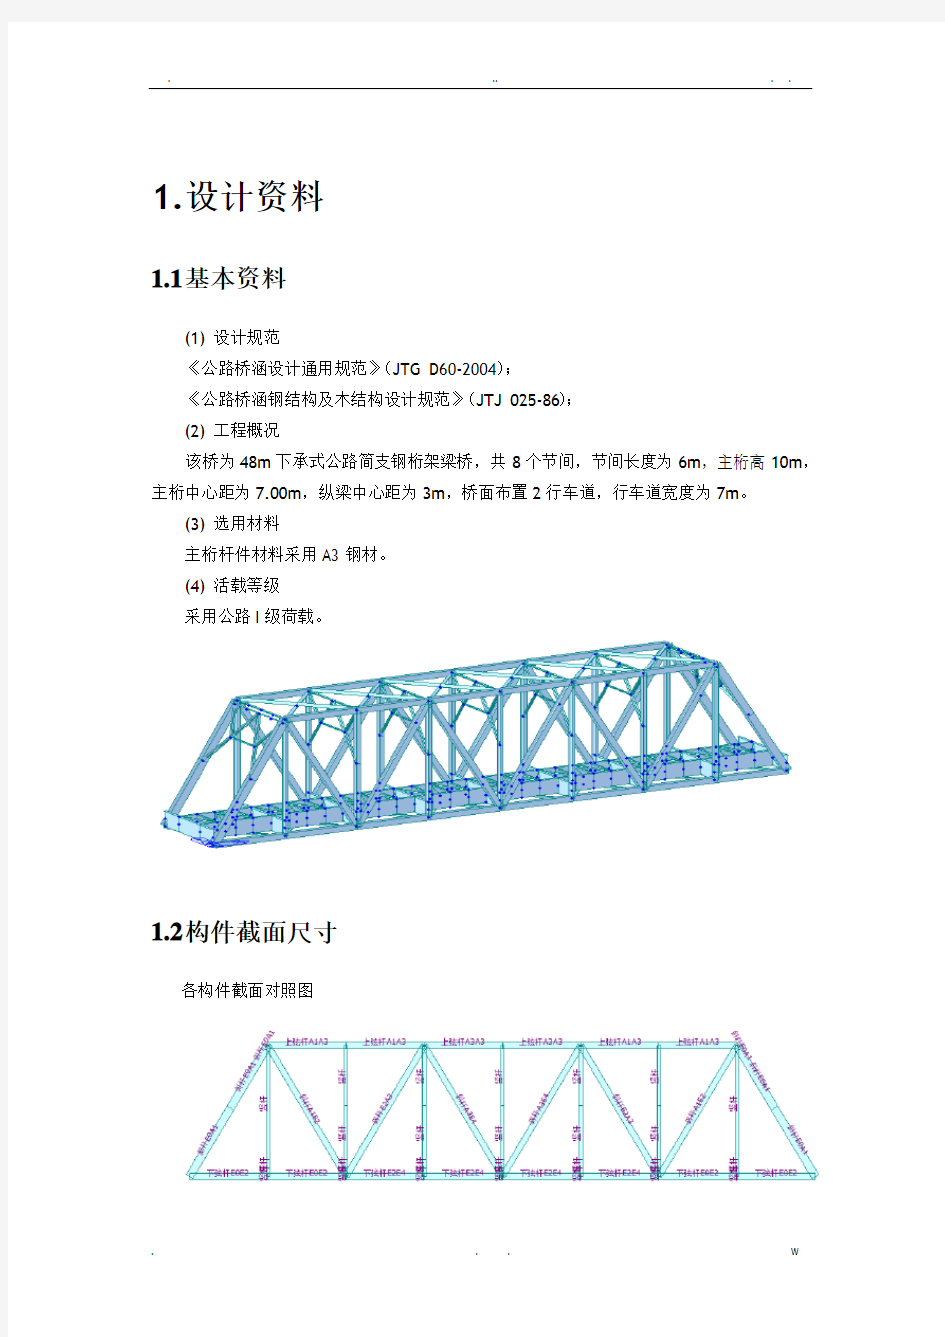 钢桁架桥计算书-毕业设计